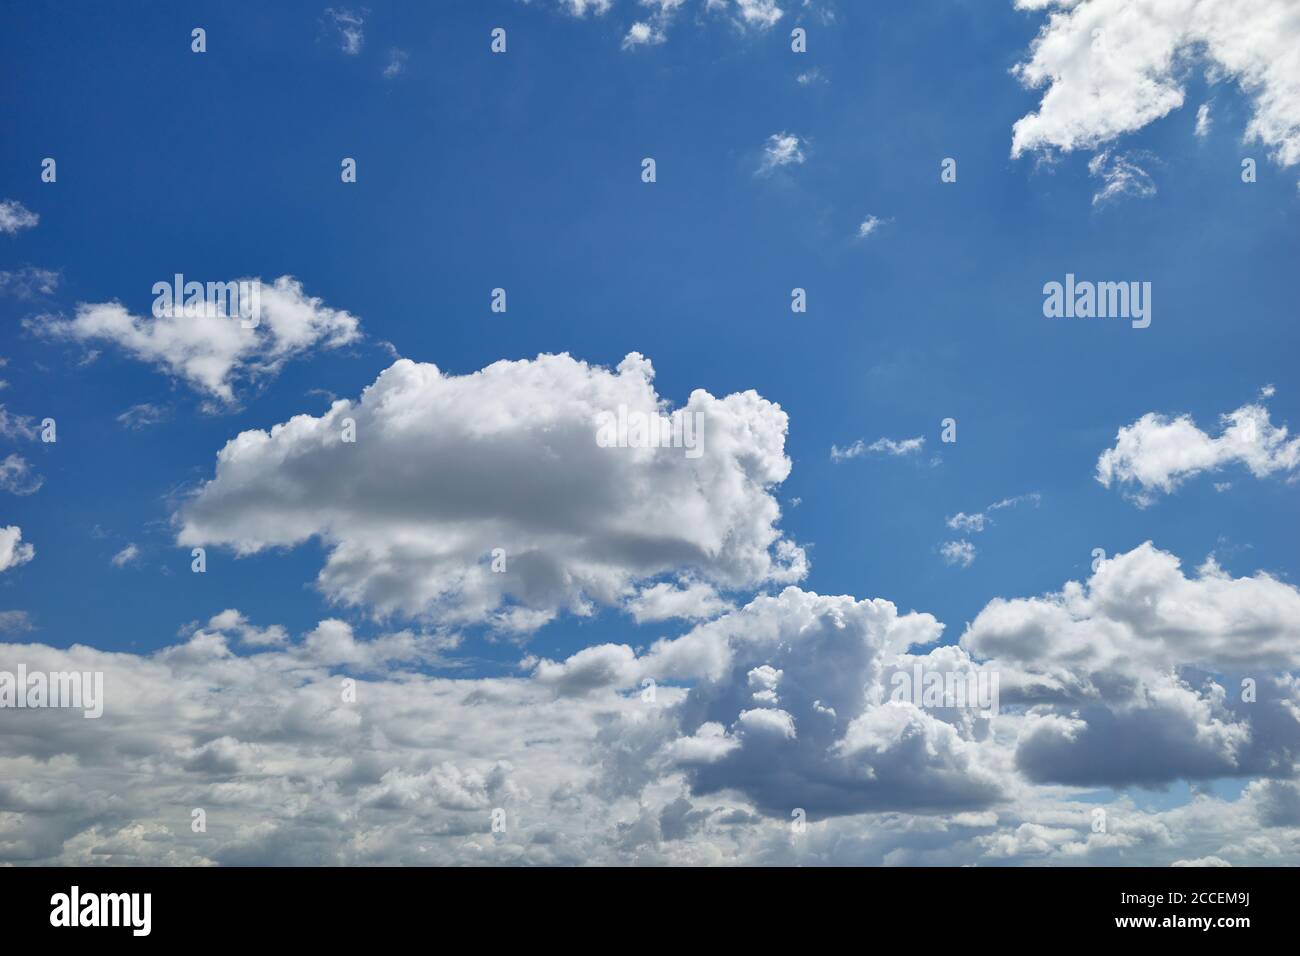 Bauchige und wogende weiße und dunkelgraue Wolken am blauen Himmel. Cumulus Wolken sind Wolken, die flache Basen haben und oft als `geschwollene` beschrieben werden Stockfoto